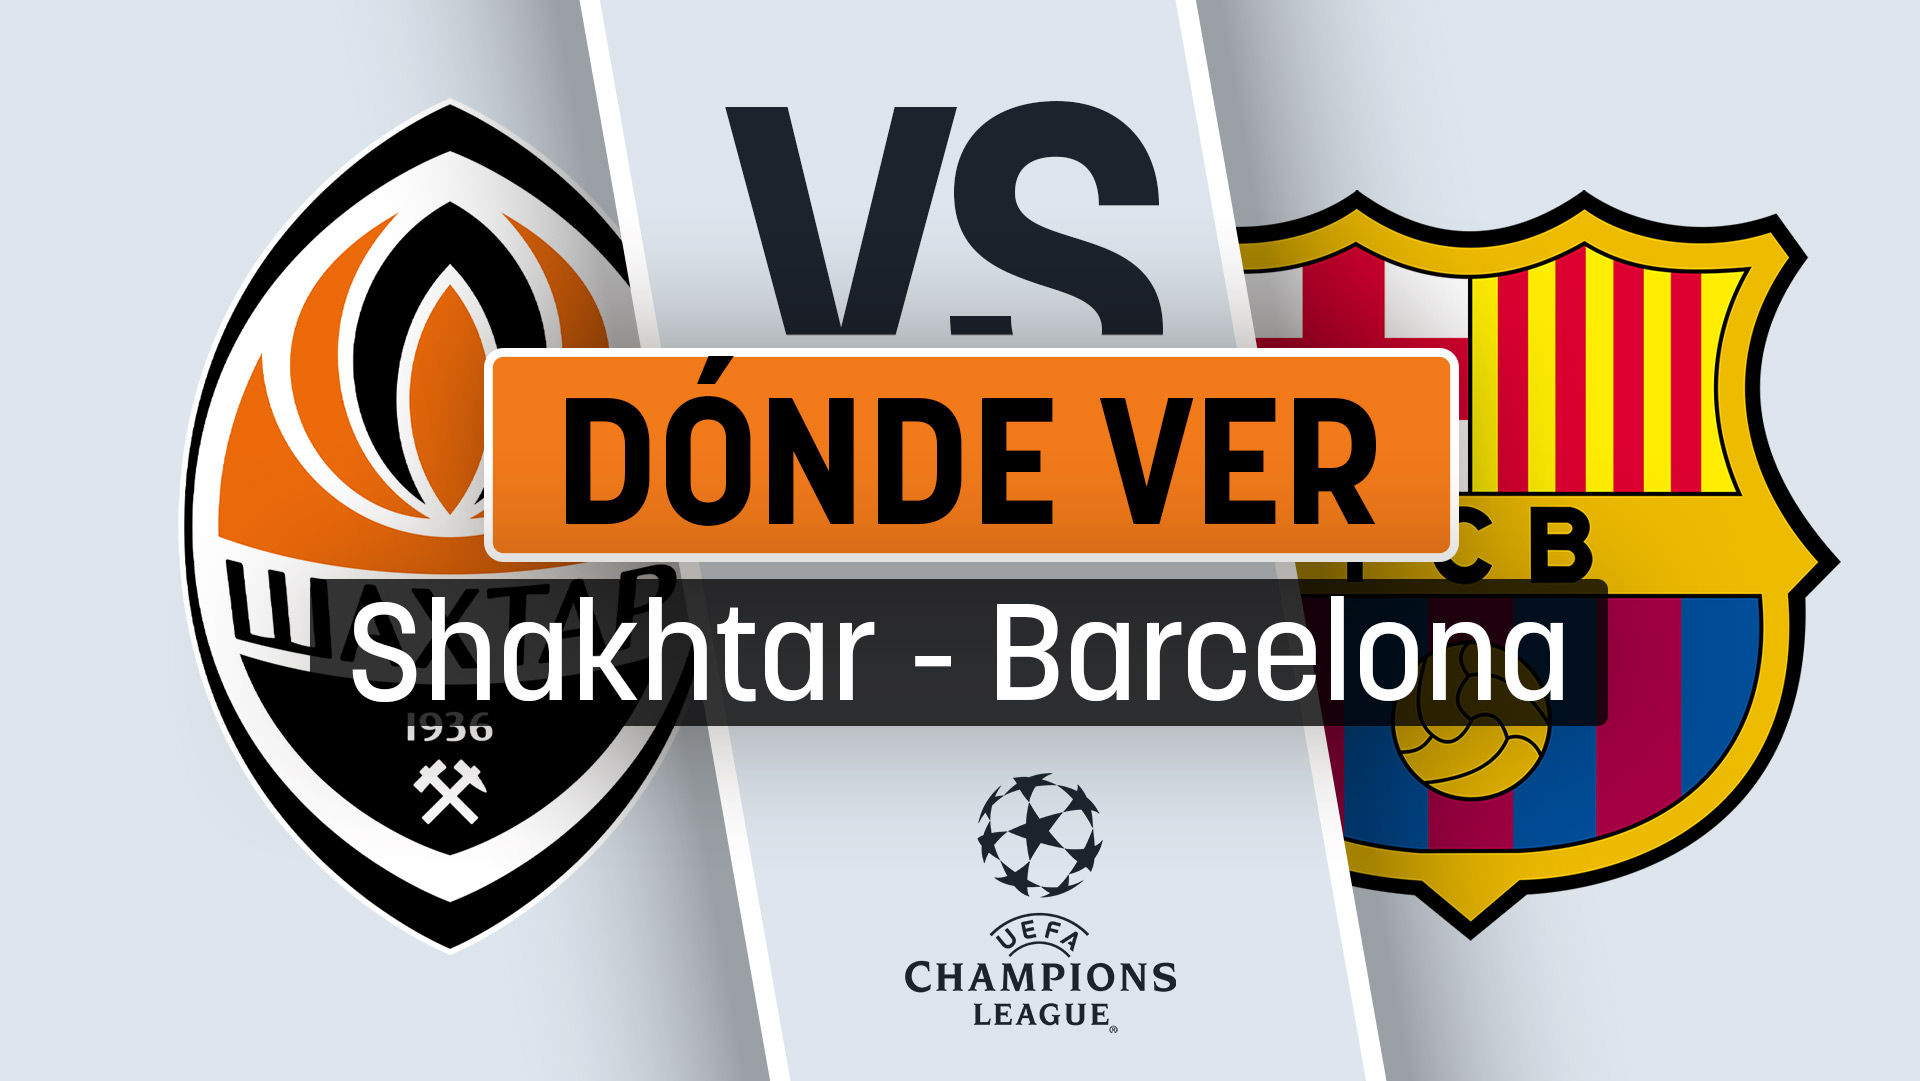 Dónde ver el partido del Barcelona hoy contra el Shakhtar por televisión y online en directo.